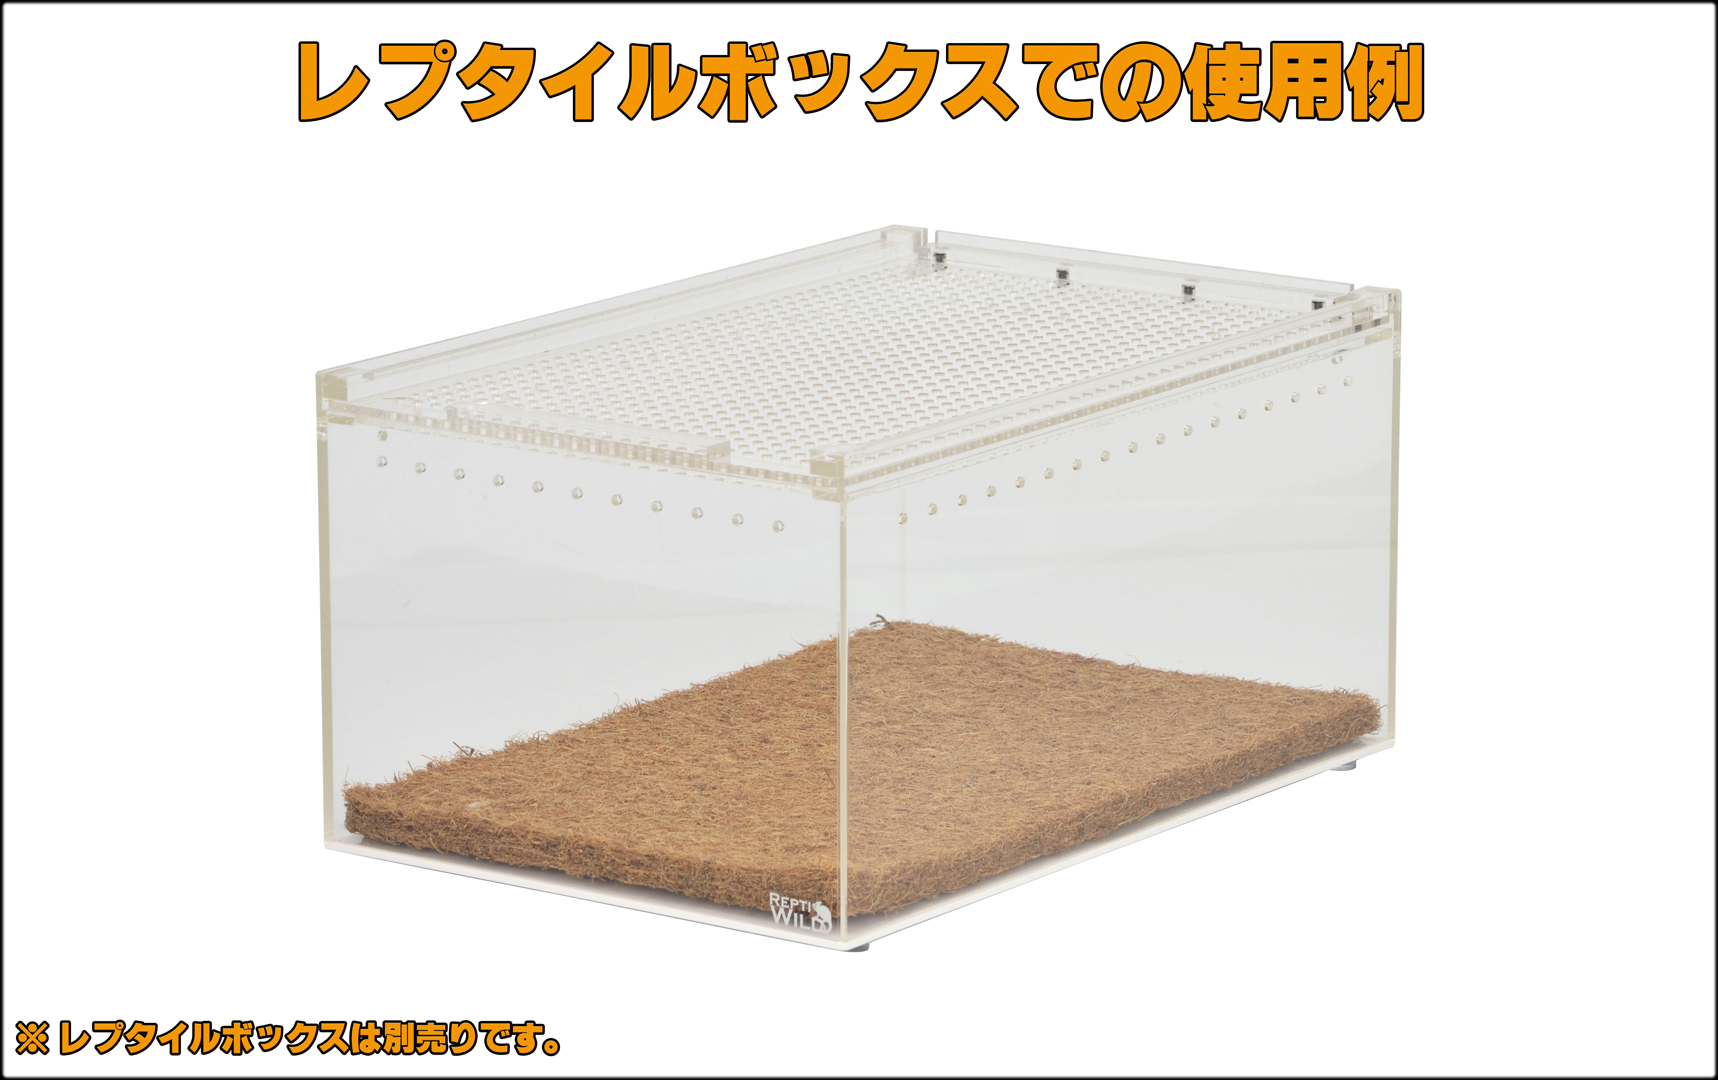 レプタイルボックスココマット(2枚パック) 爬虫類用床材 販売 通販